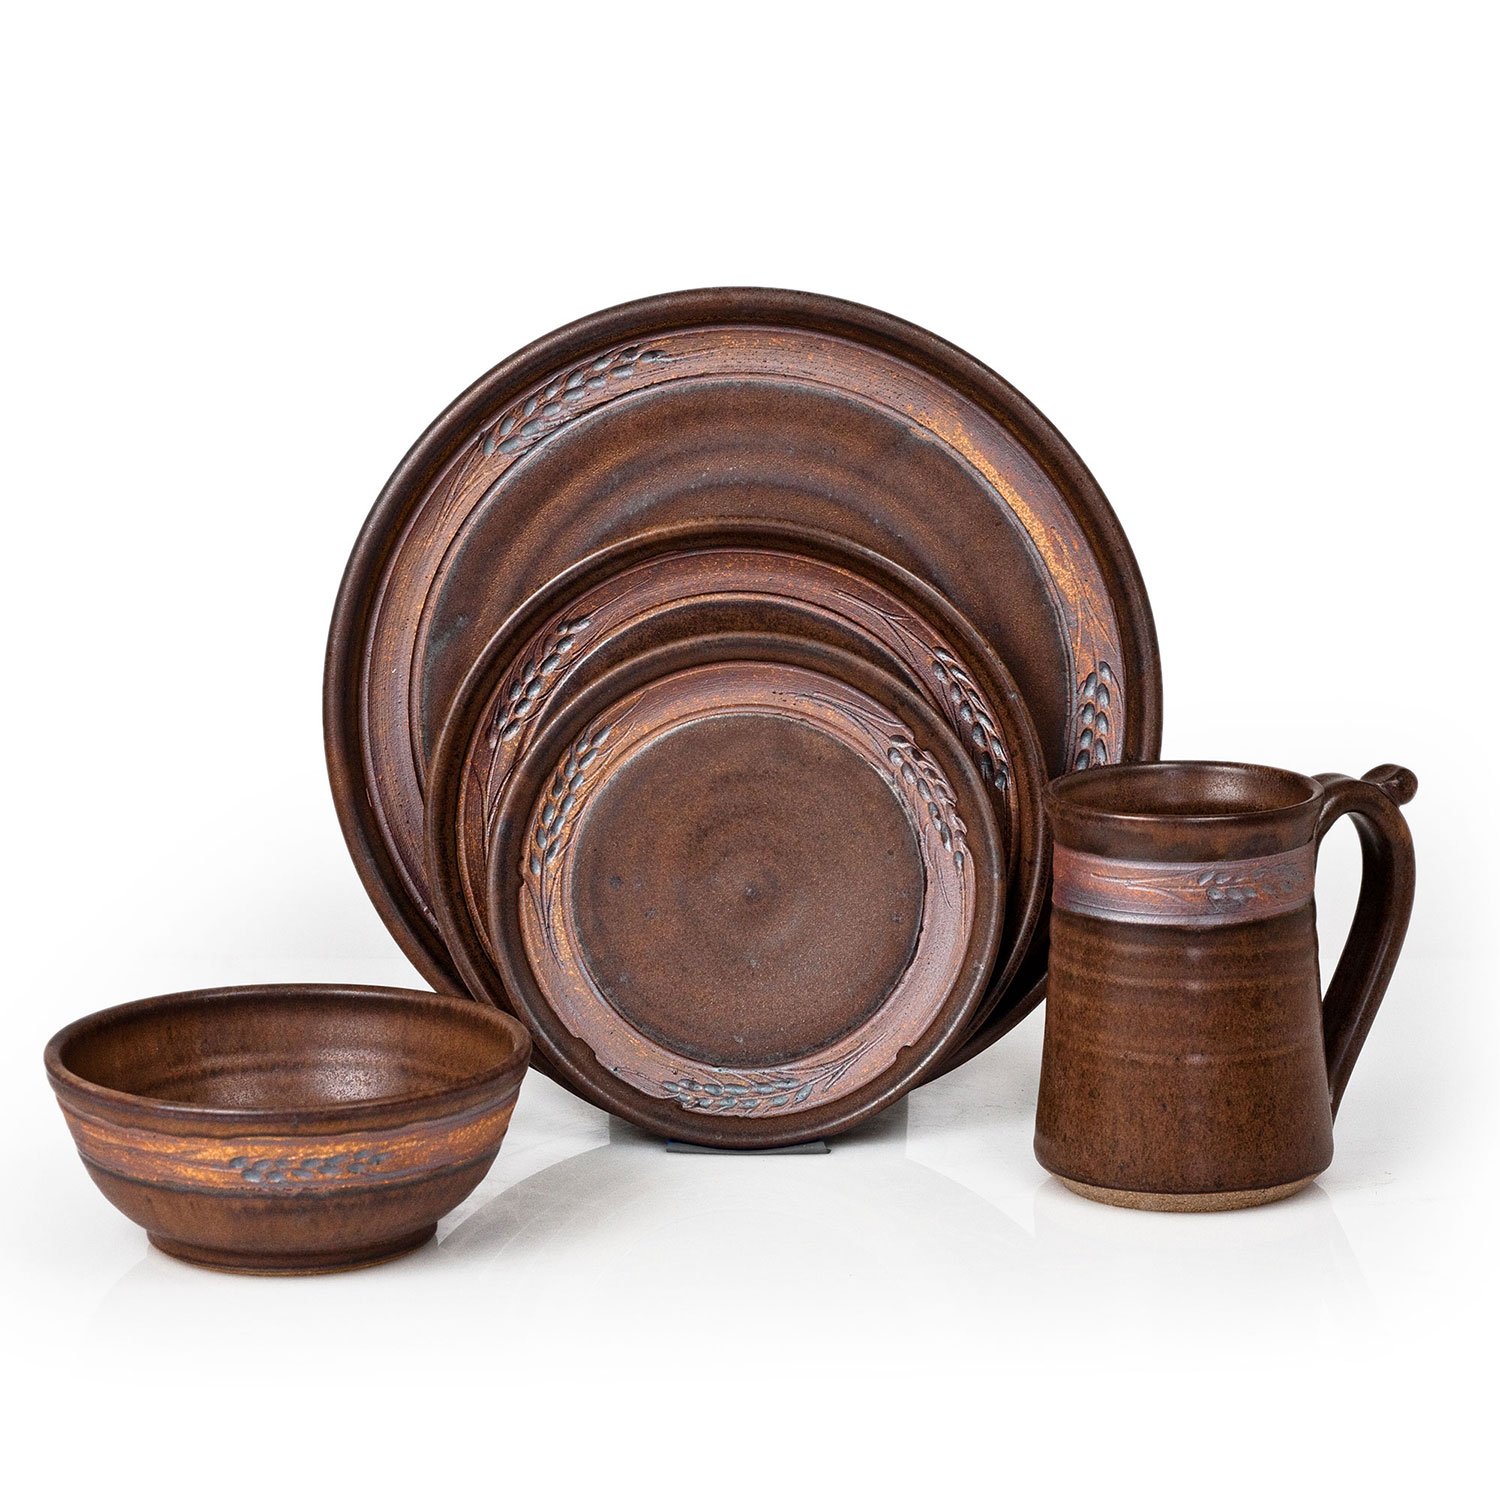 Montana's Handmade Stoneware Pottery | Mountain Arts Pottery